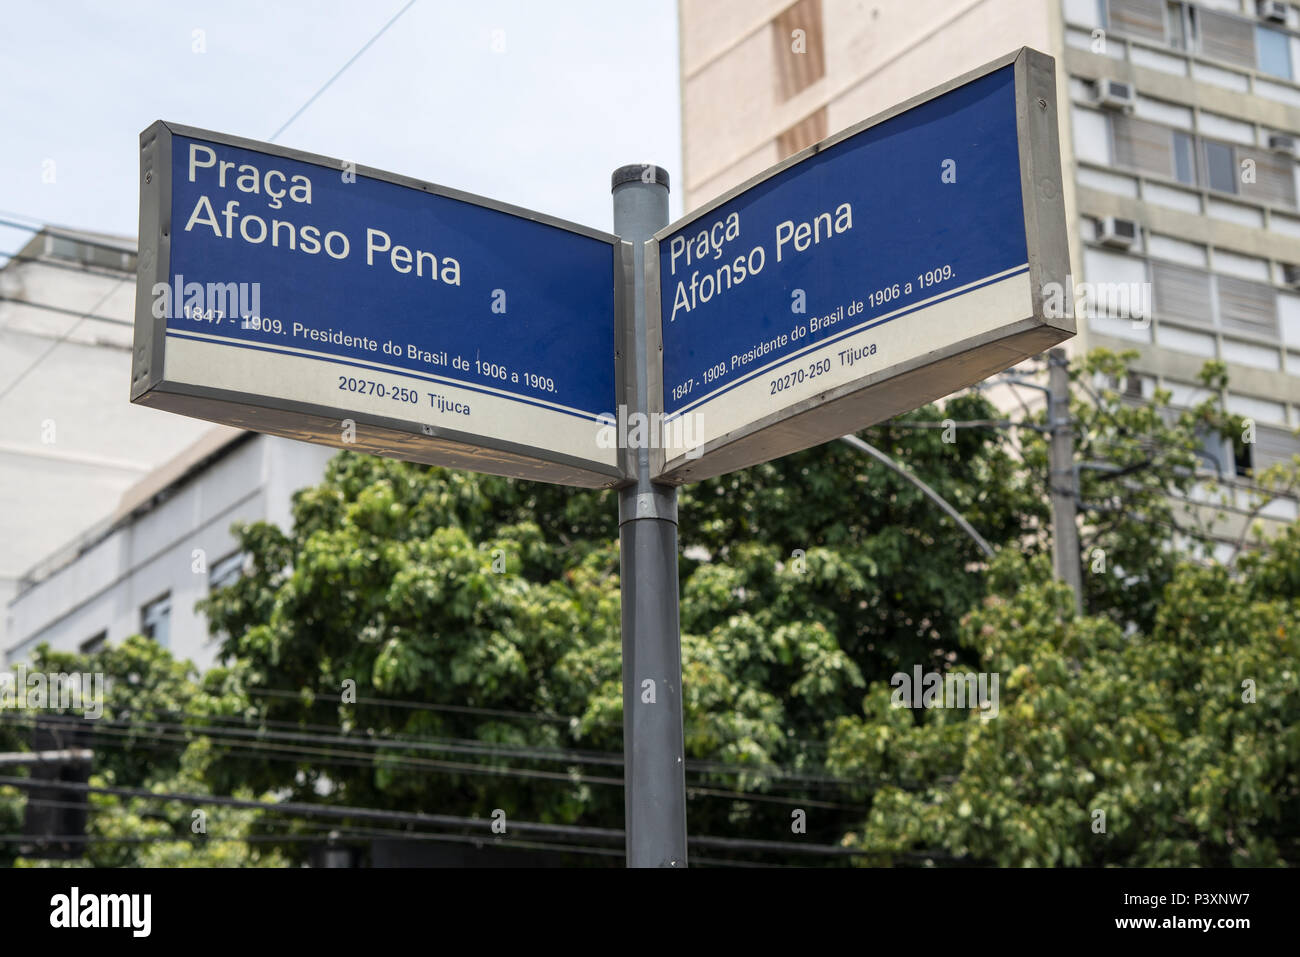 Placa indicativa com o nome da Praça Afonso Pena, Tijuca na zona norte da Cidade do Rio de Janeiro. L'accès à l'Afonso Pena presidente do Brasil de 1906 a 1909 Banque D'Images